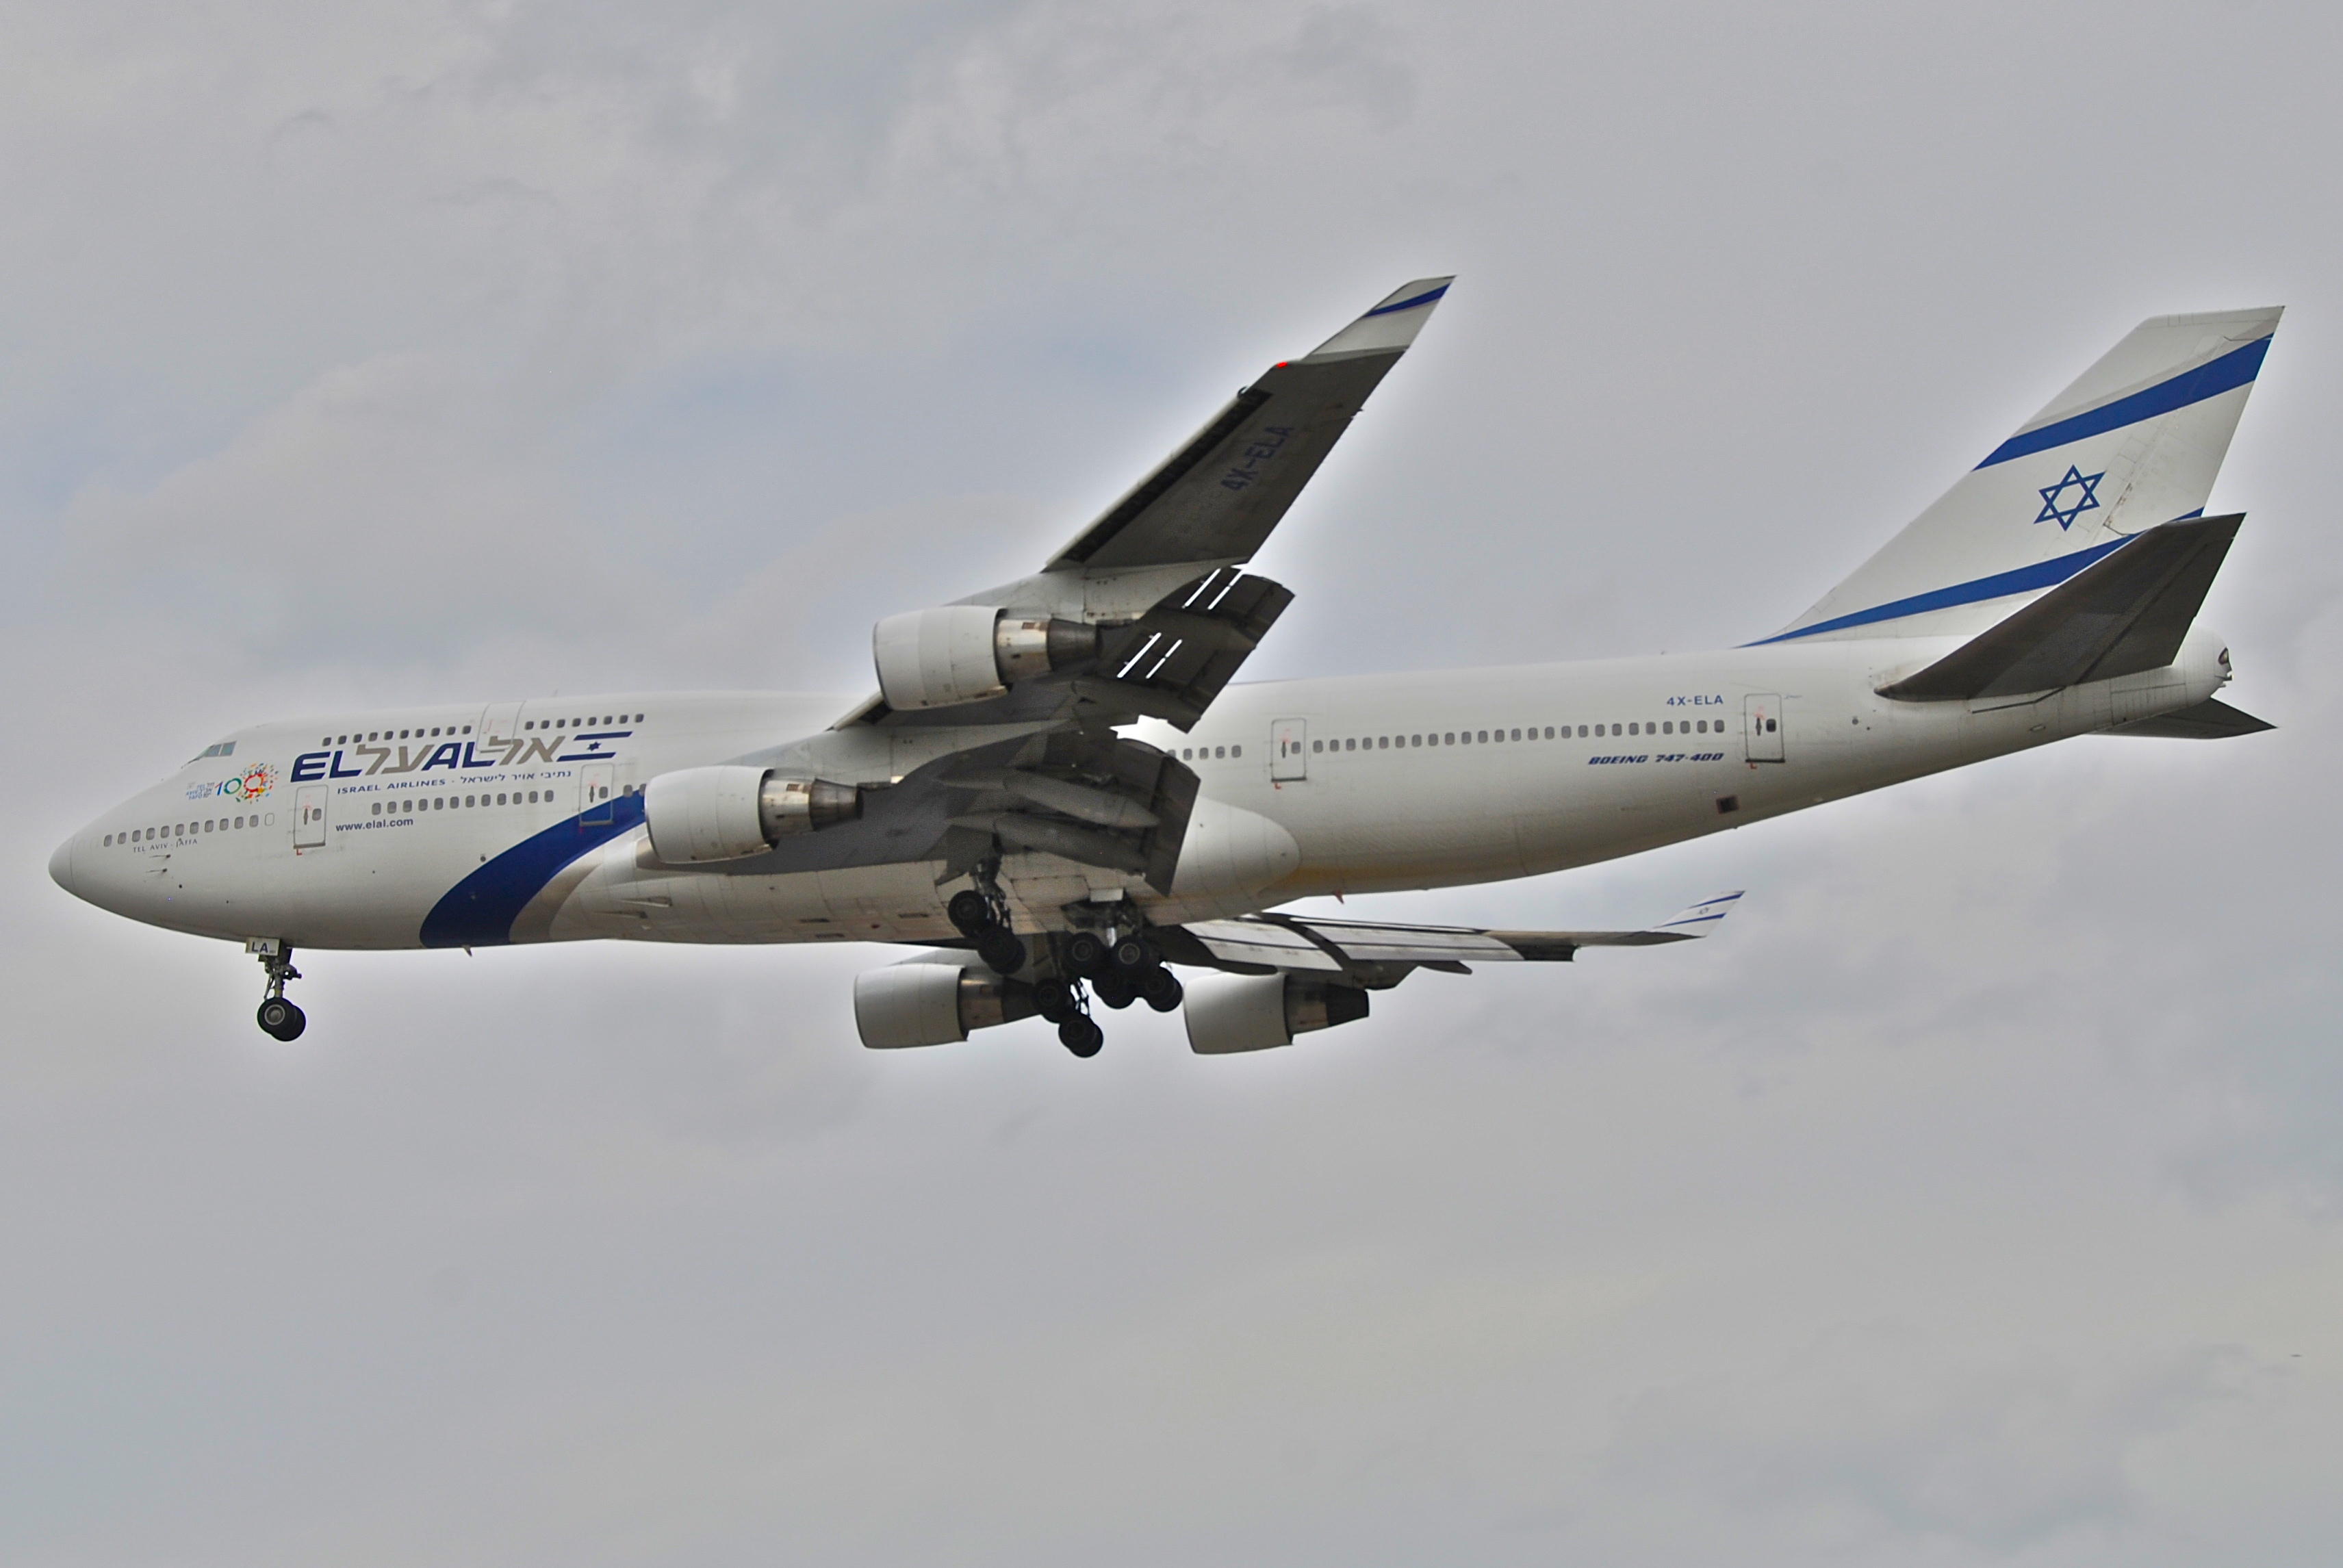 El Al Boeing 747-400, 4X-ELA@LHR,05.08.2009-550hi - Flickr - Aero Icarus